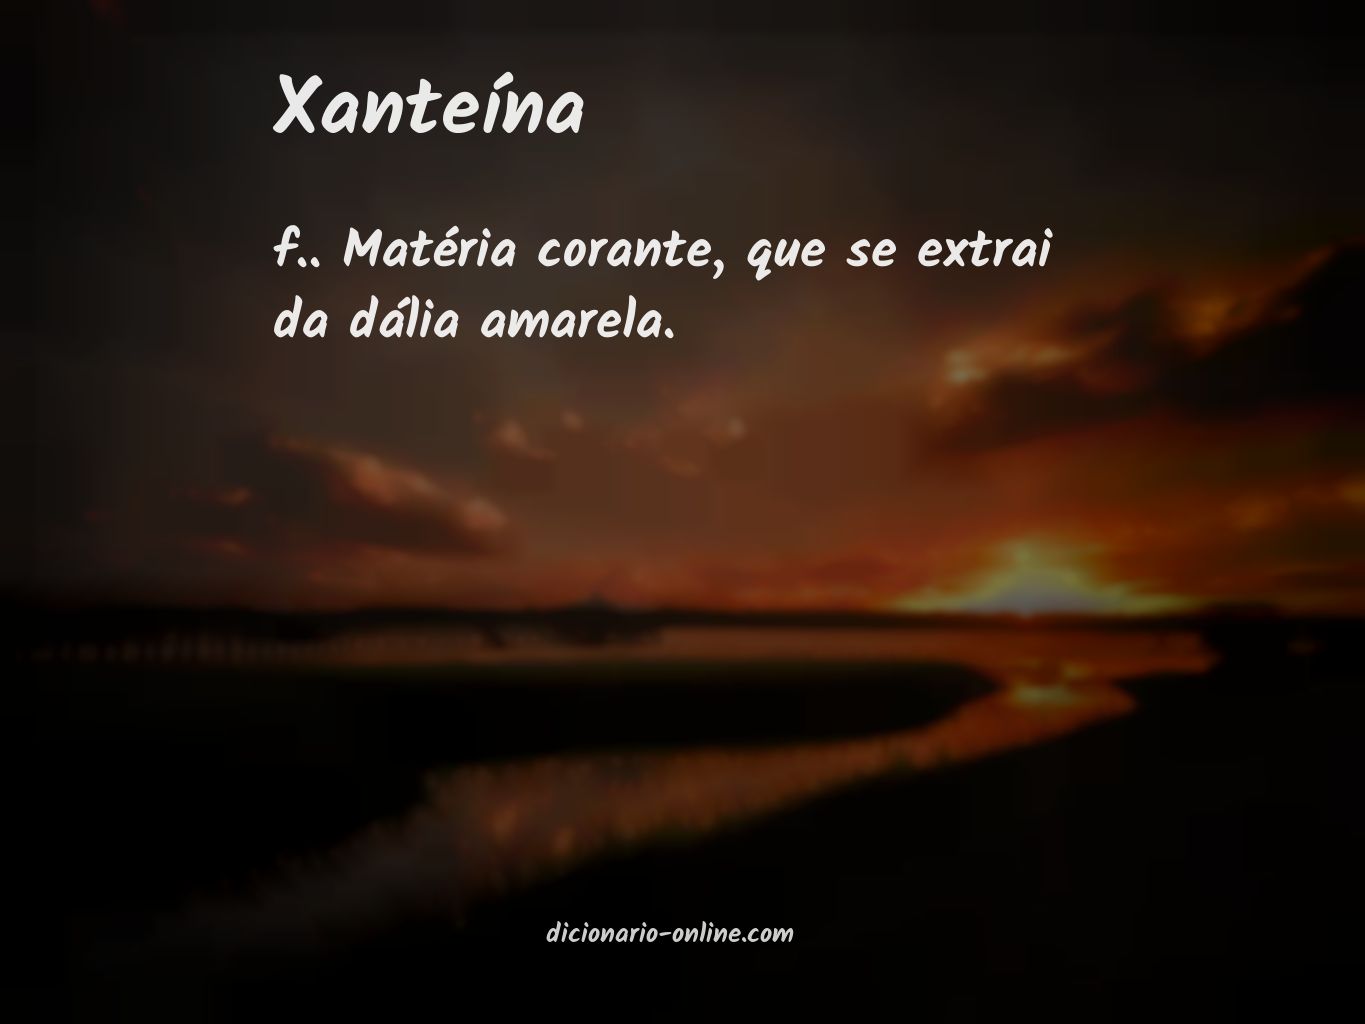 Significado de xanteína